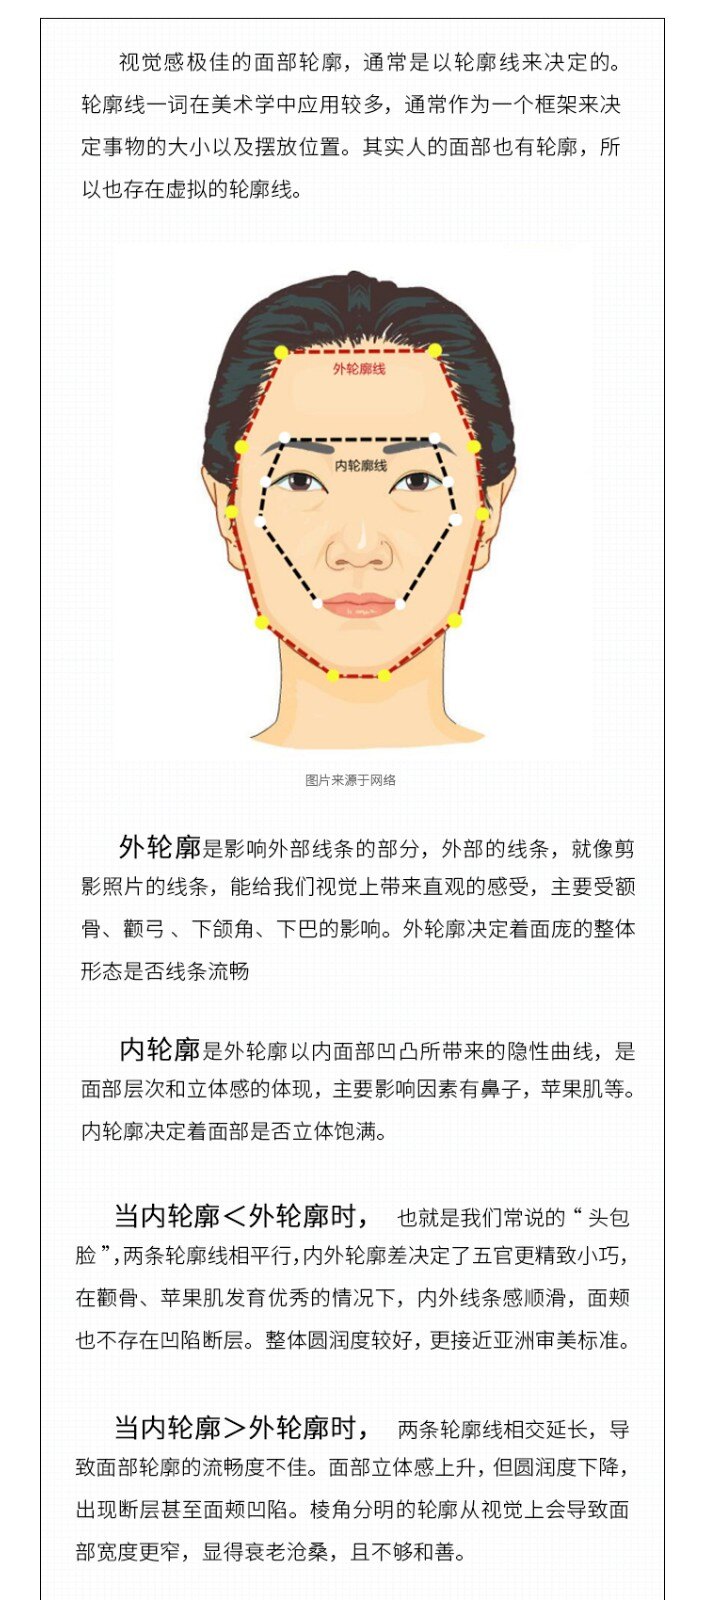 面部的内轮廓和外轮廓指的是什么?